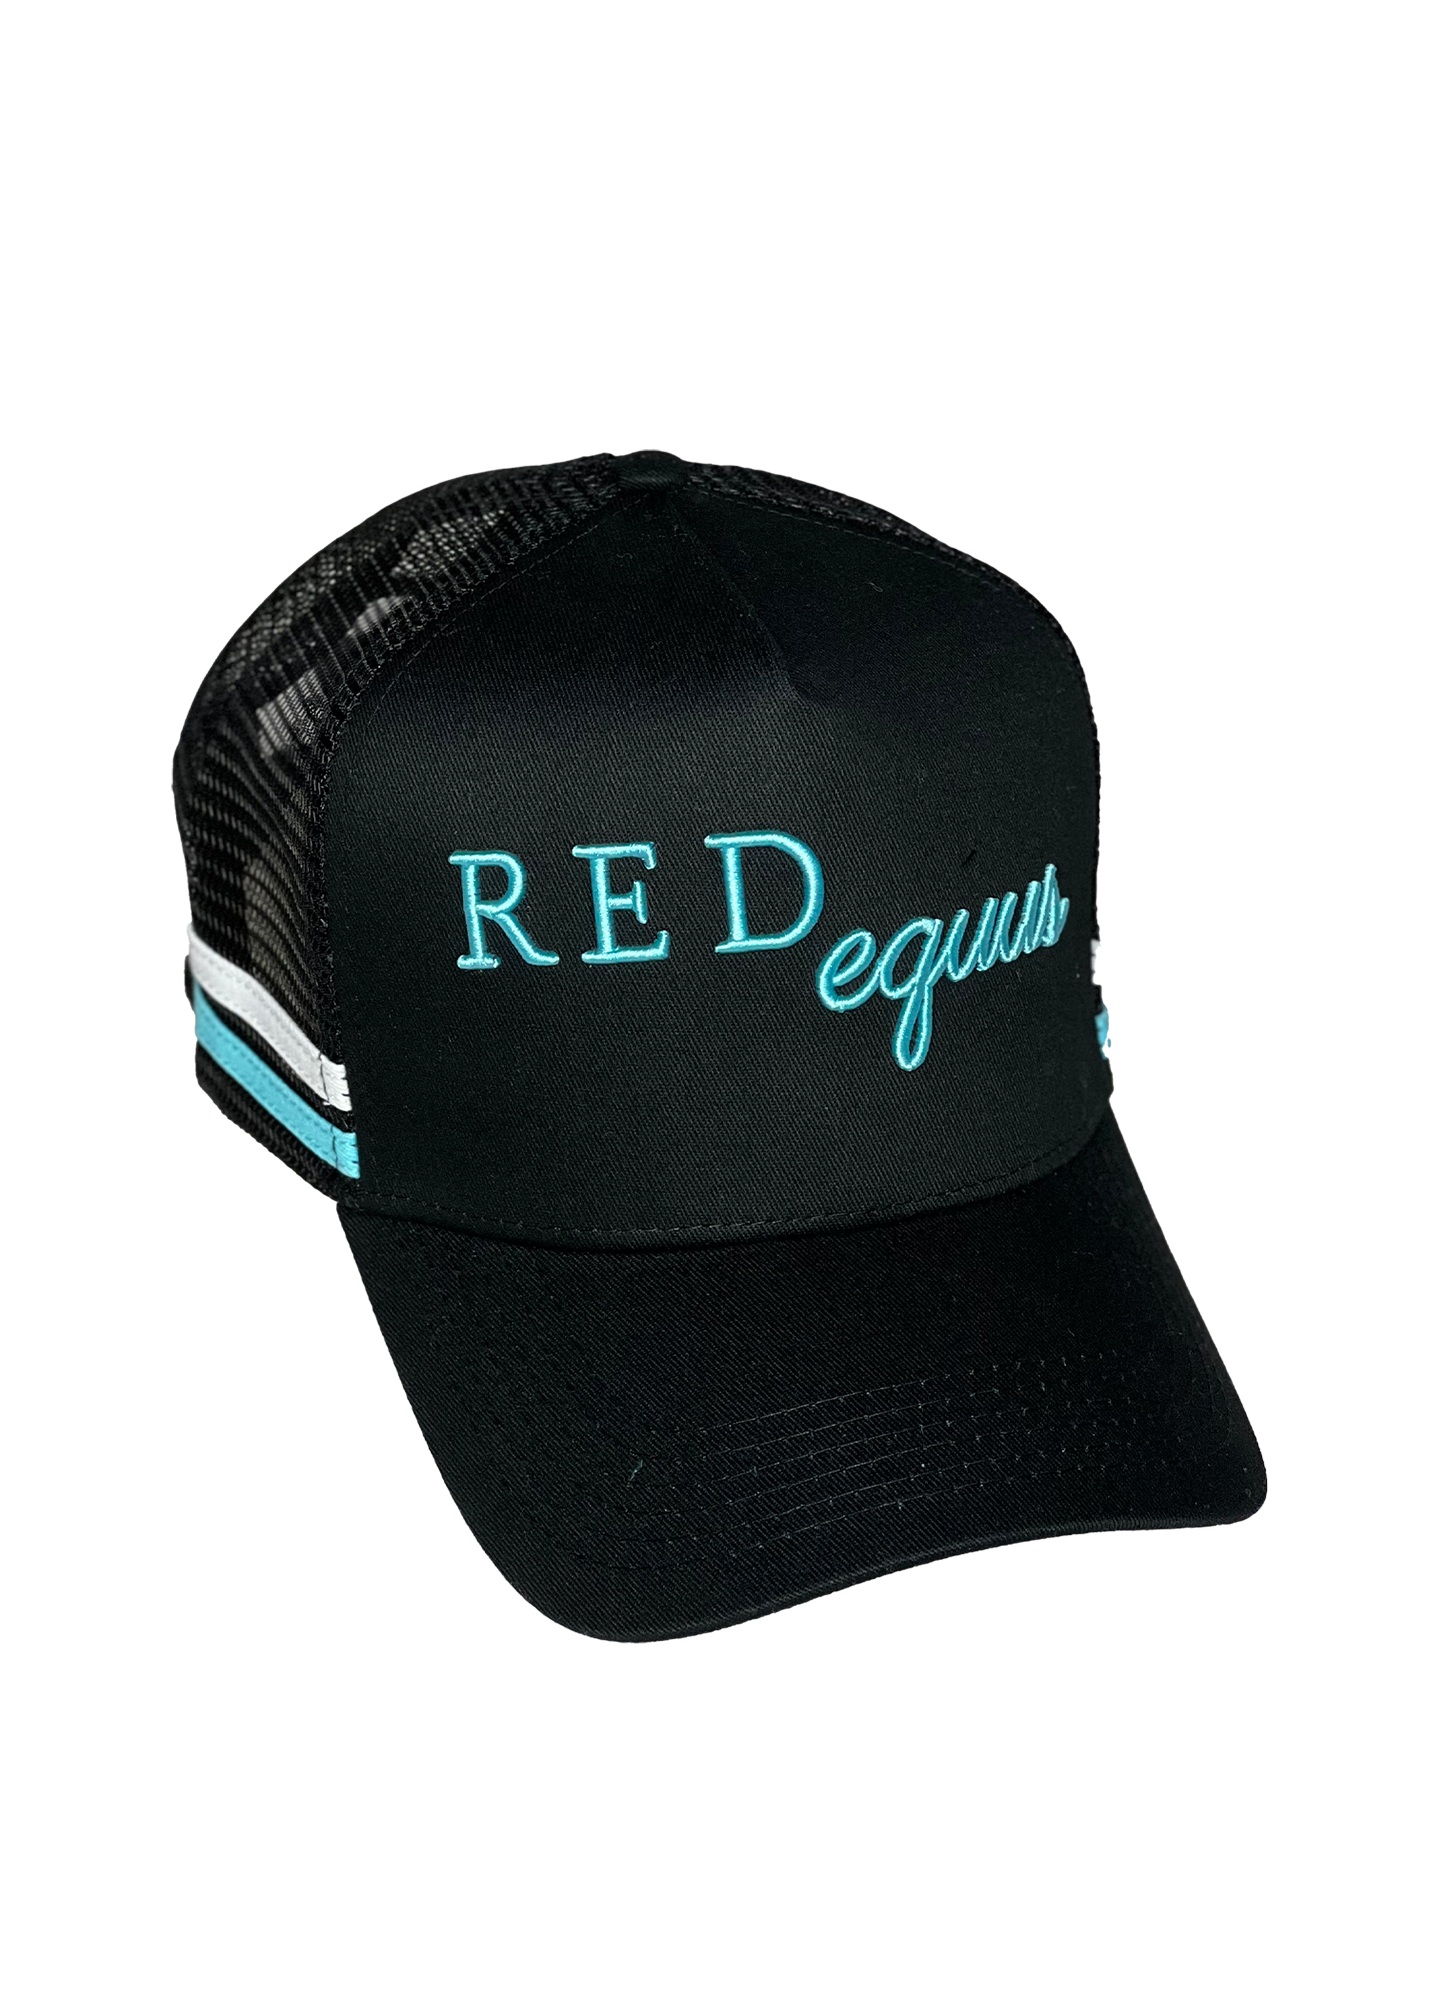 RedEquus - Caps